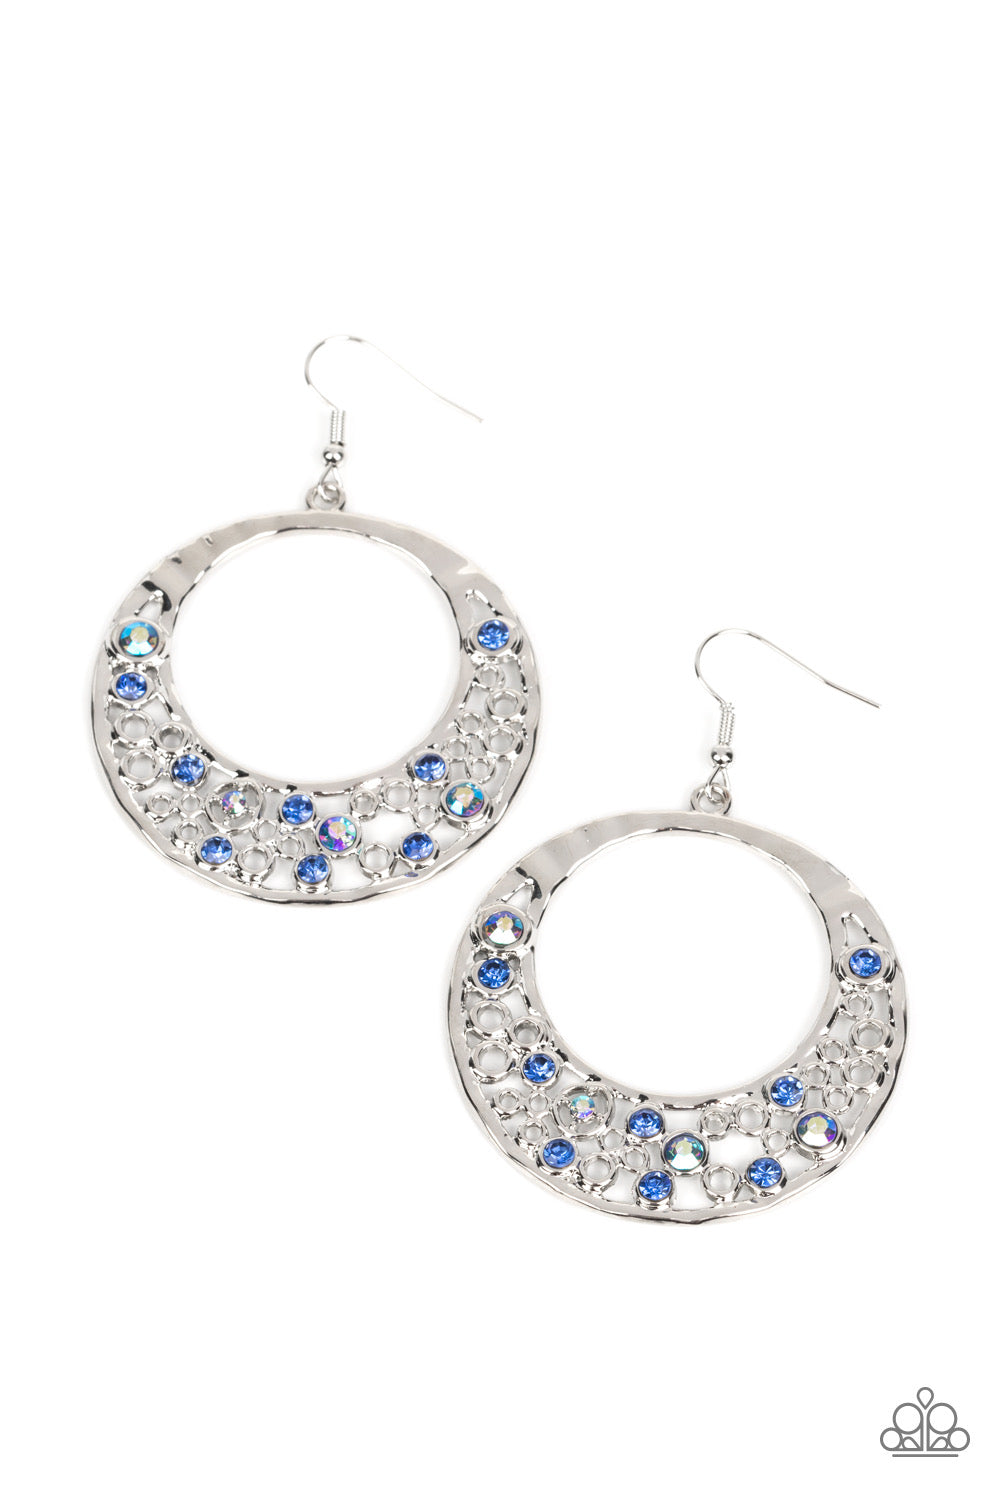 Paparazzi Enchanted Effervescence - Blue Earrings -Paparazzi jewelry Images 